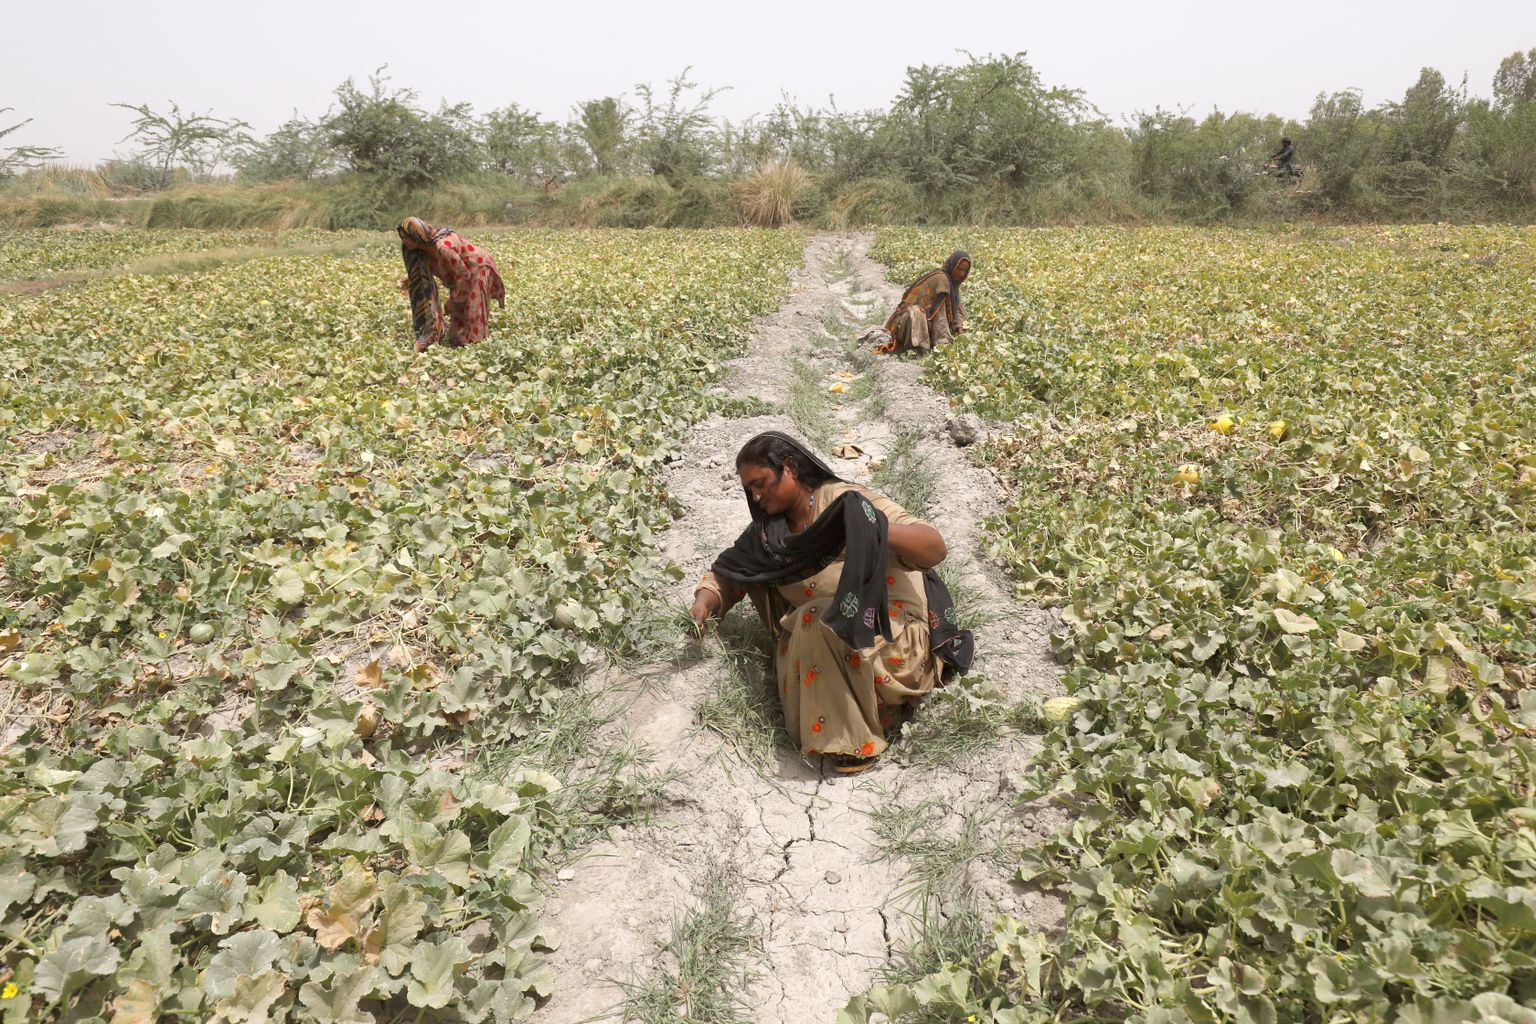 Naised põllul rohimas. Eelmisel aastal Pakistani tabanud kuumalaine hävitas suure osa melonisaagist.